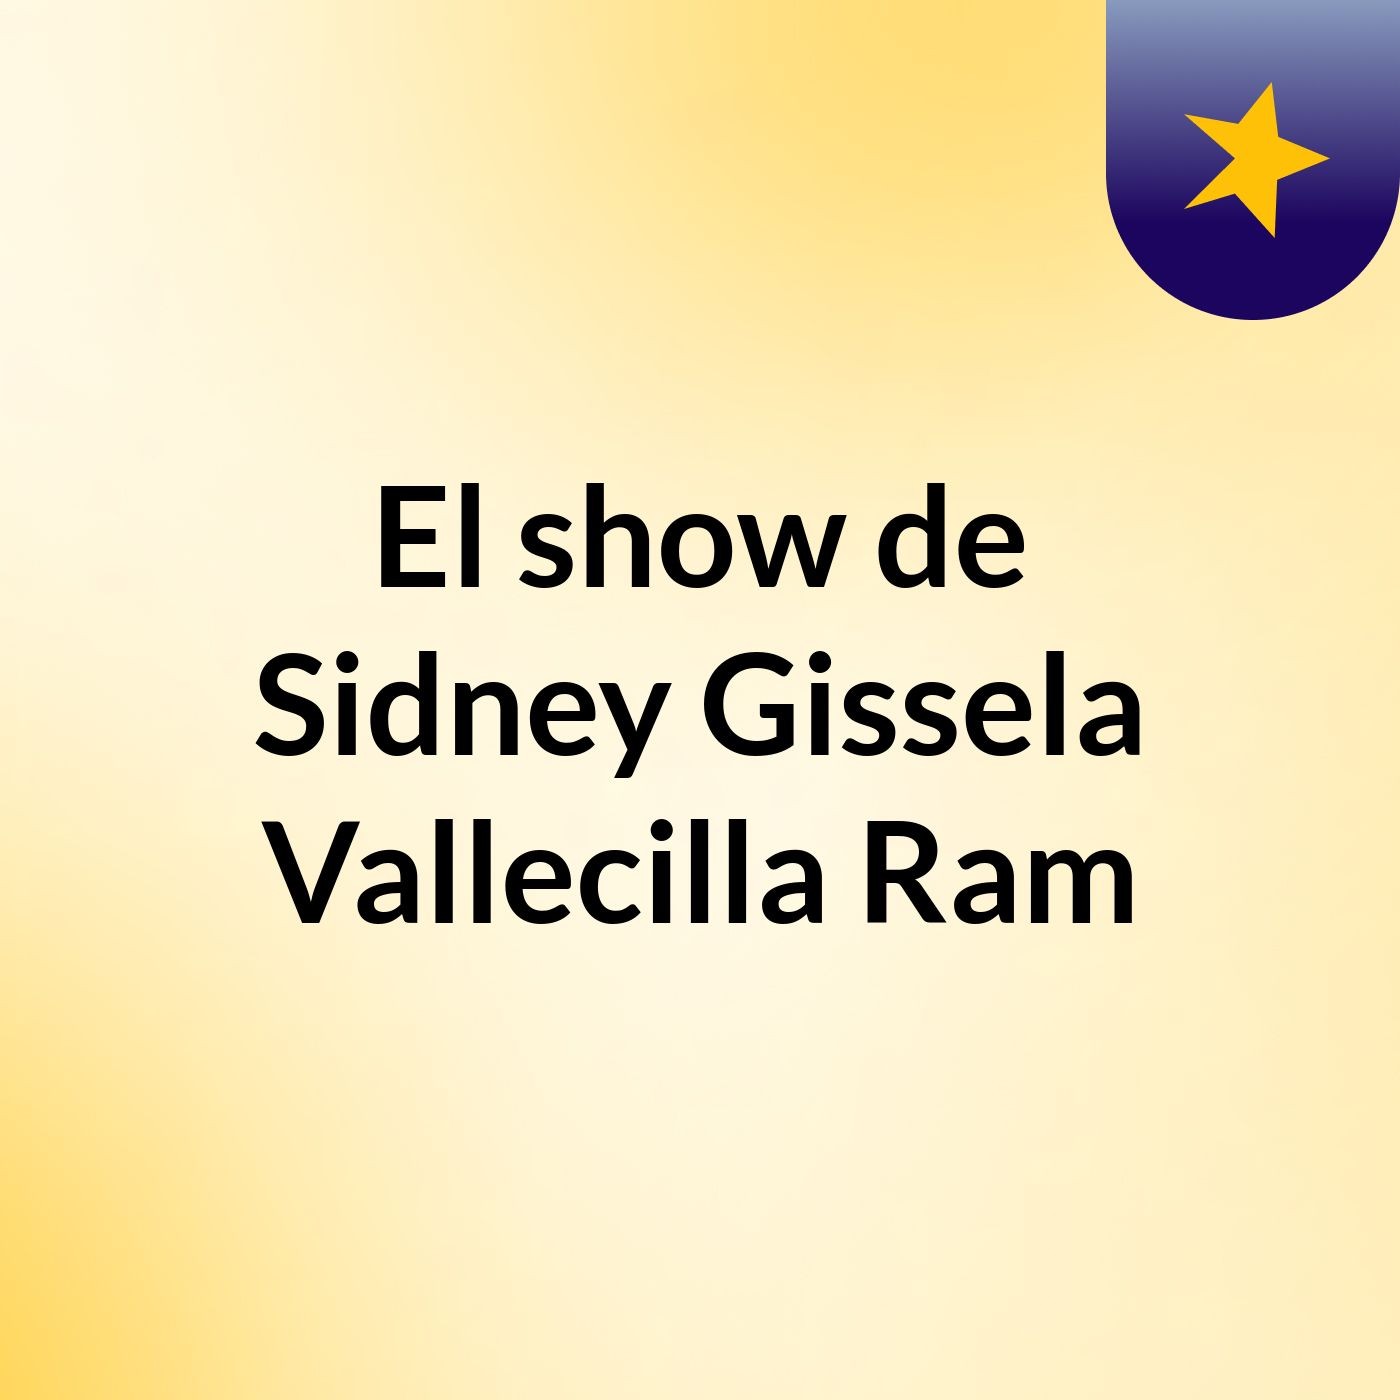 El show de Sidney Gissela Vallecilla Ram